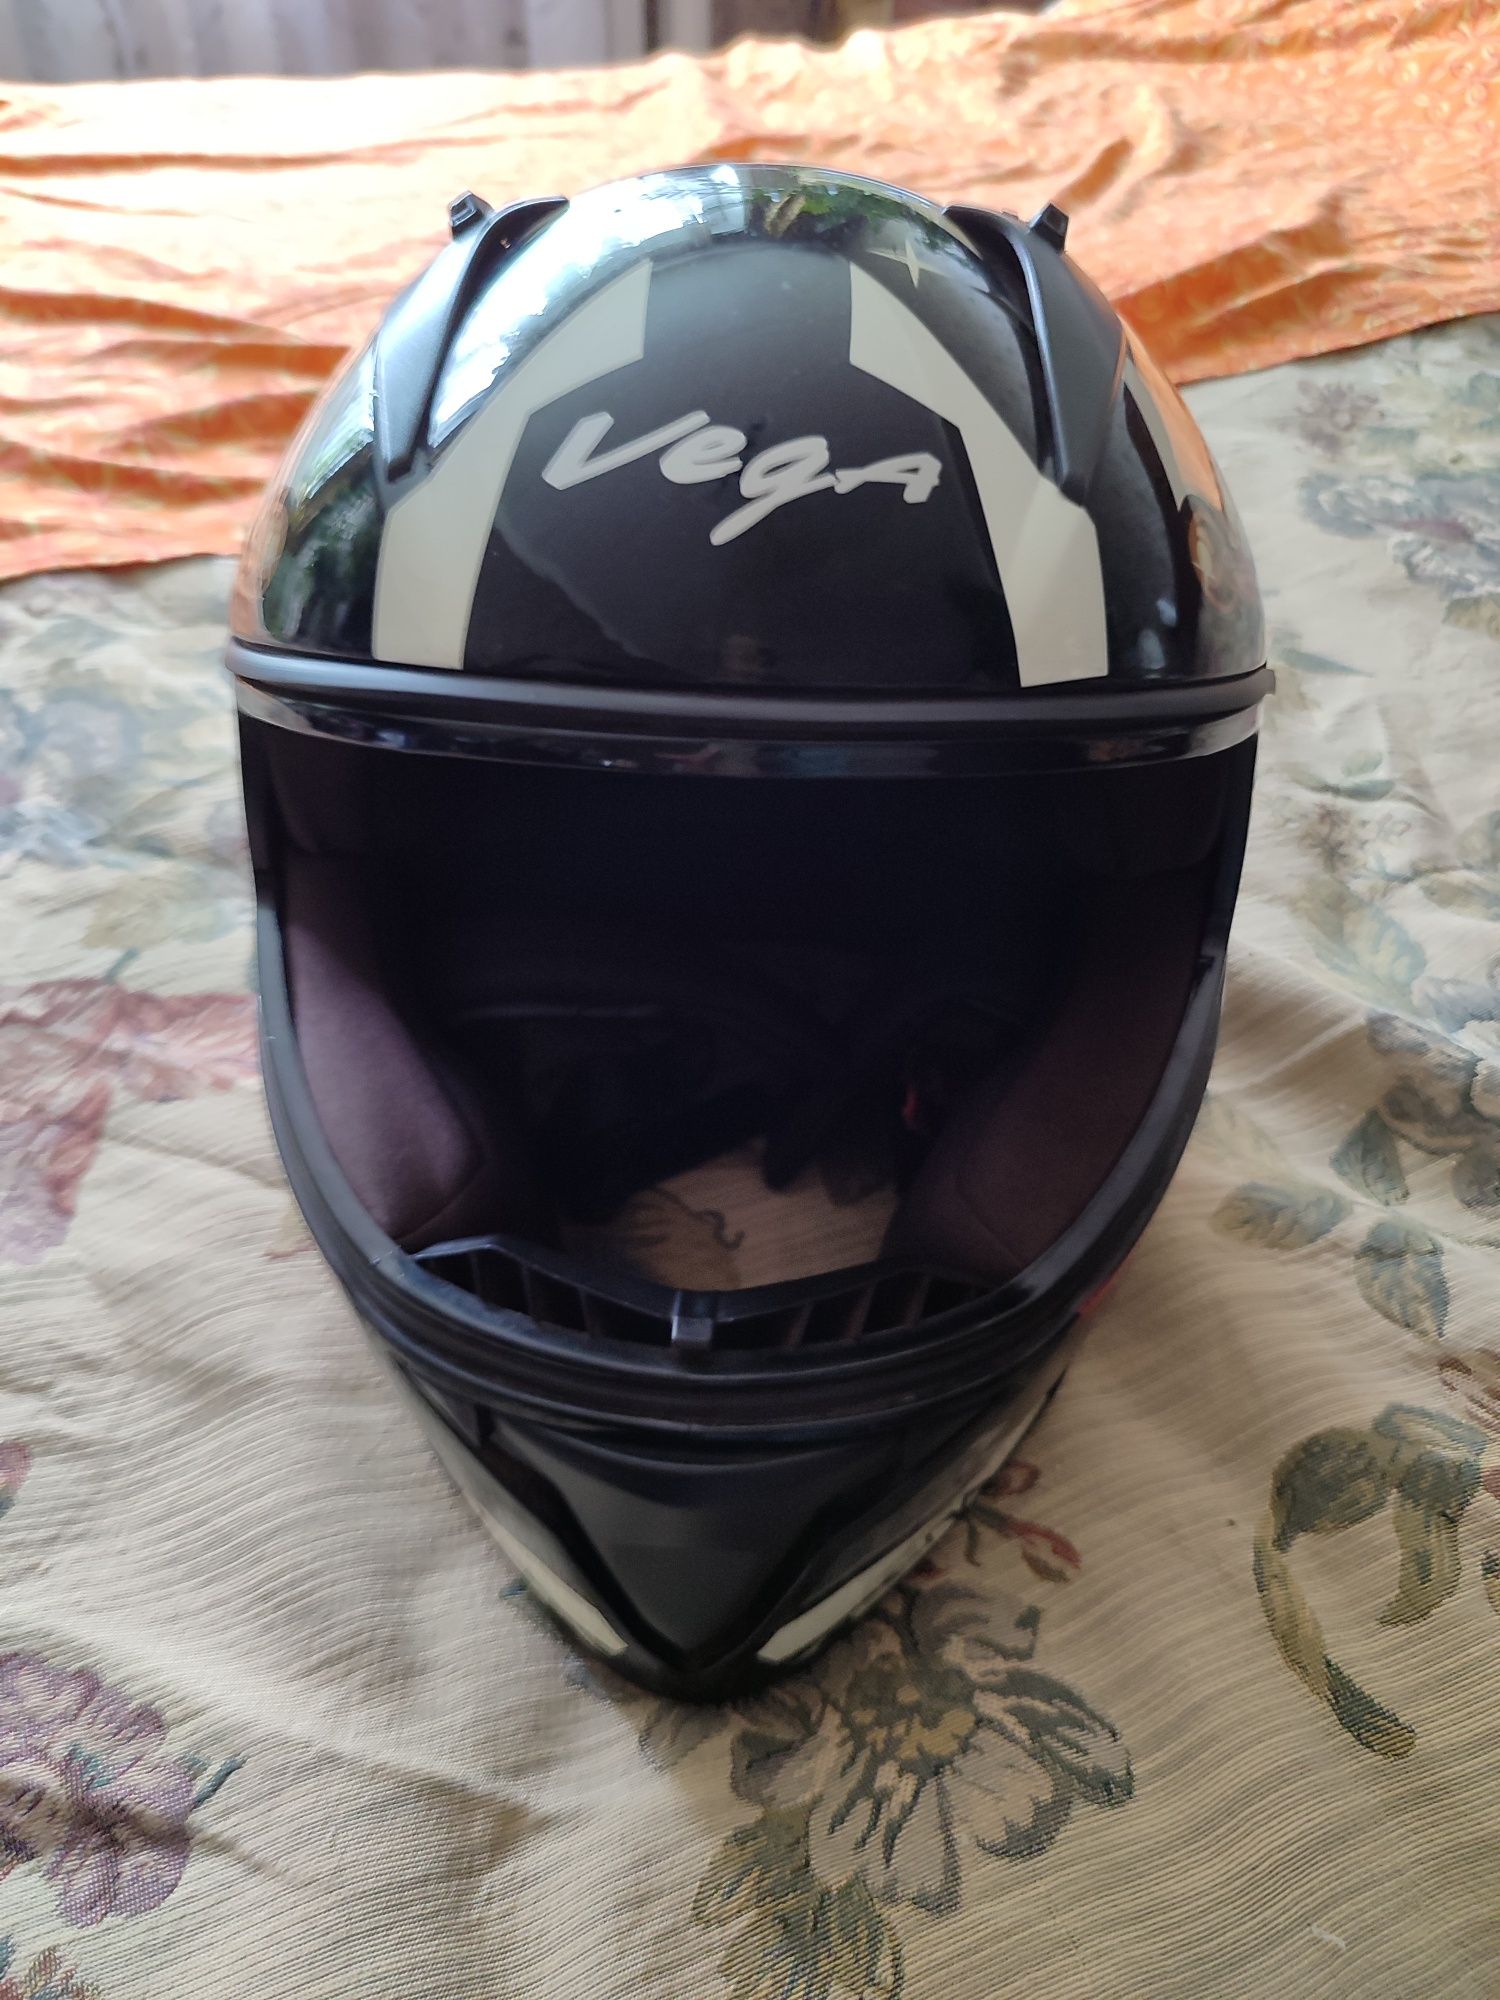 Vega BOLT helmet